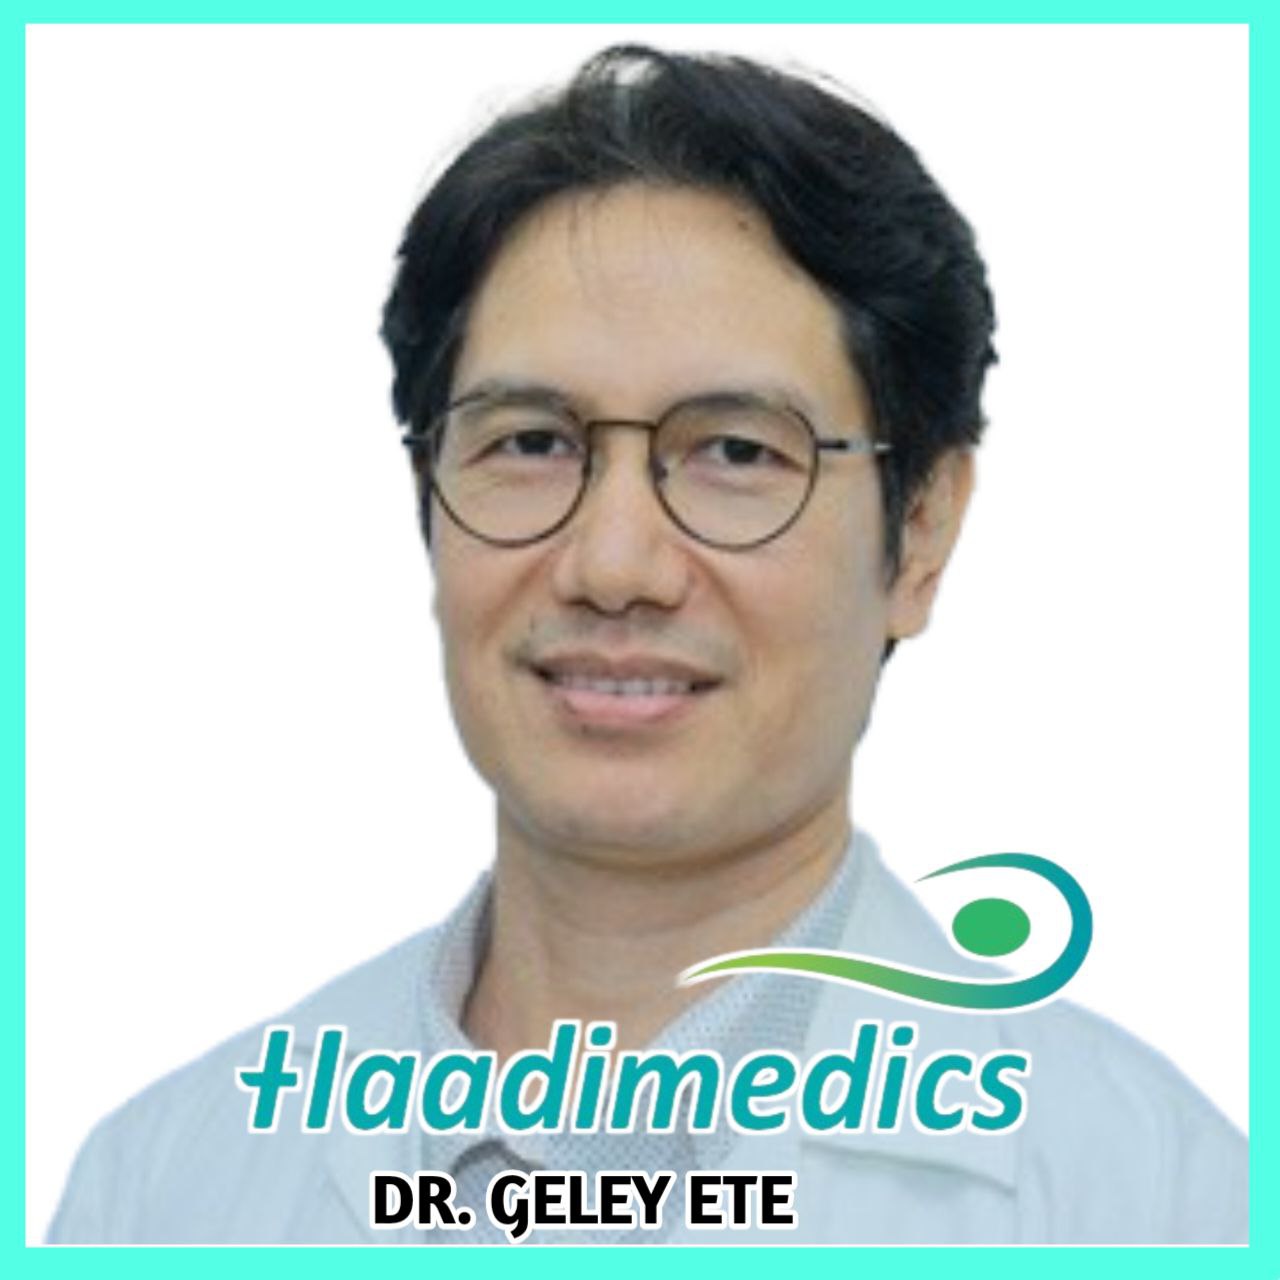 Dr. Geley Ete